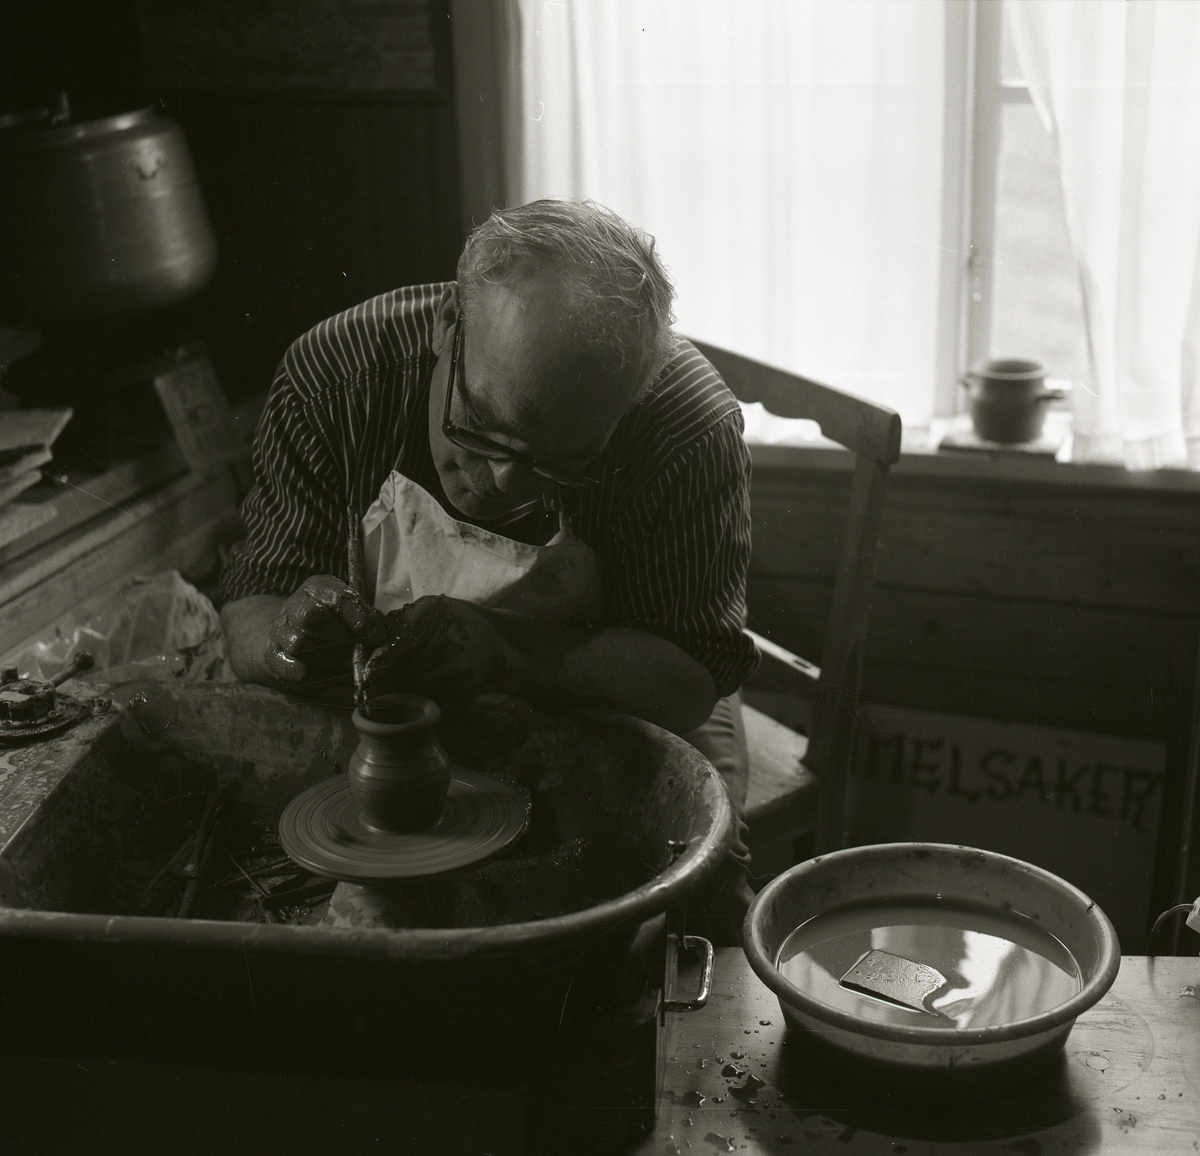 En man sitter vid en drejskiva och drejar ett kärl av lera med hjälp av ett verktyg under Gammelvärldens dag vid Hembygdsbyn 1980 . Mannen har ett förkläde och glasögon på sig. Bakom honom syns ett fönster med gardin och en kruka på fönsterkarmen.